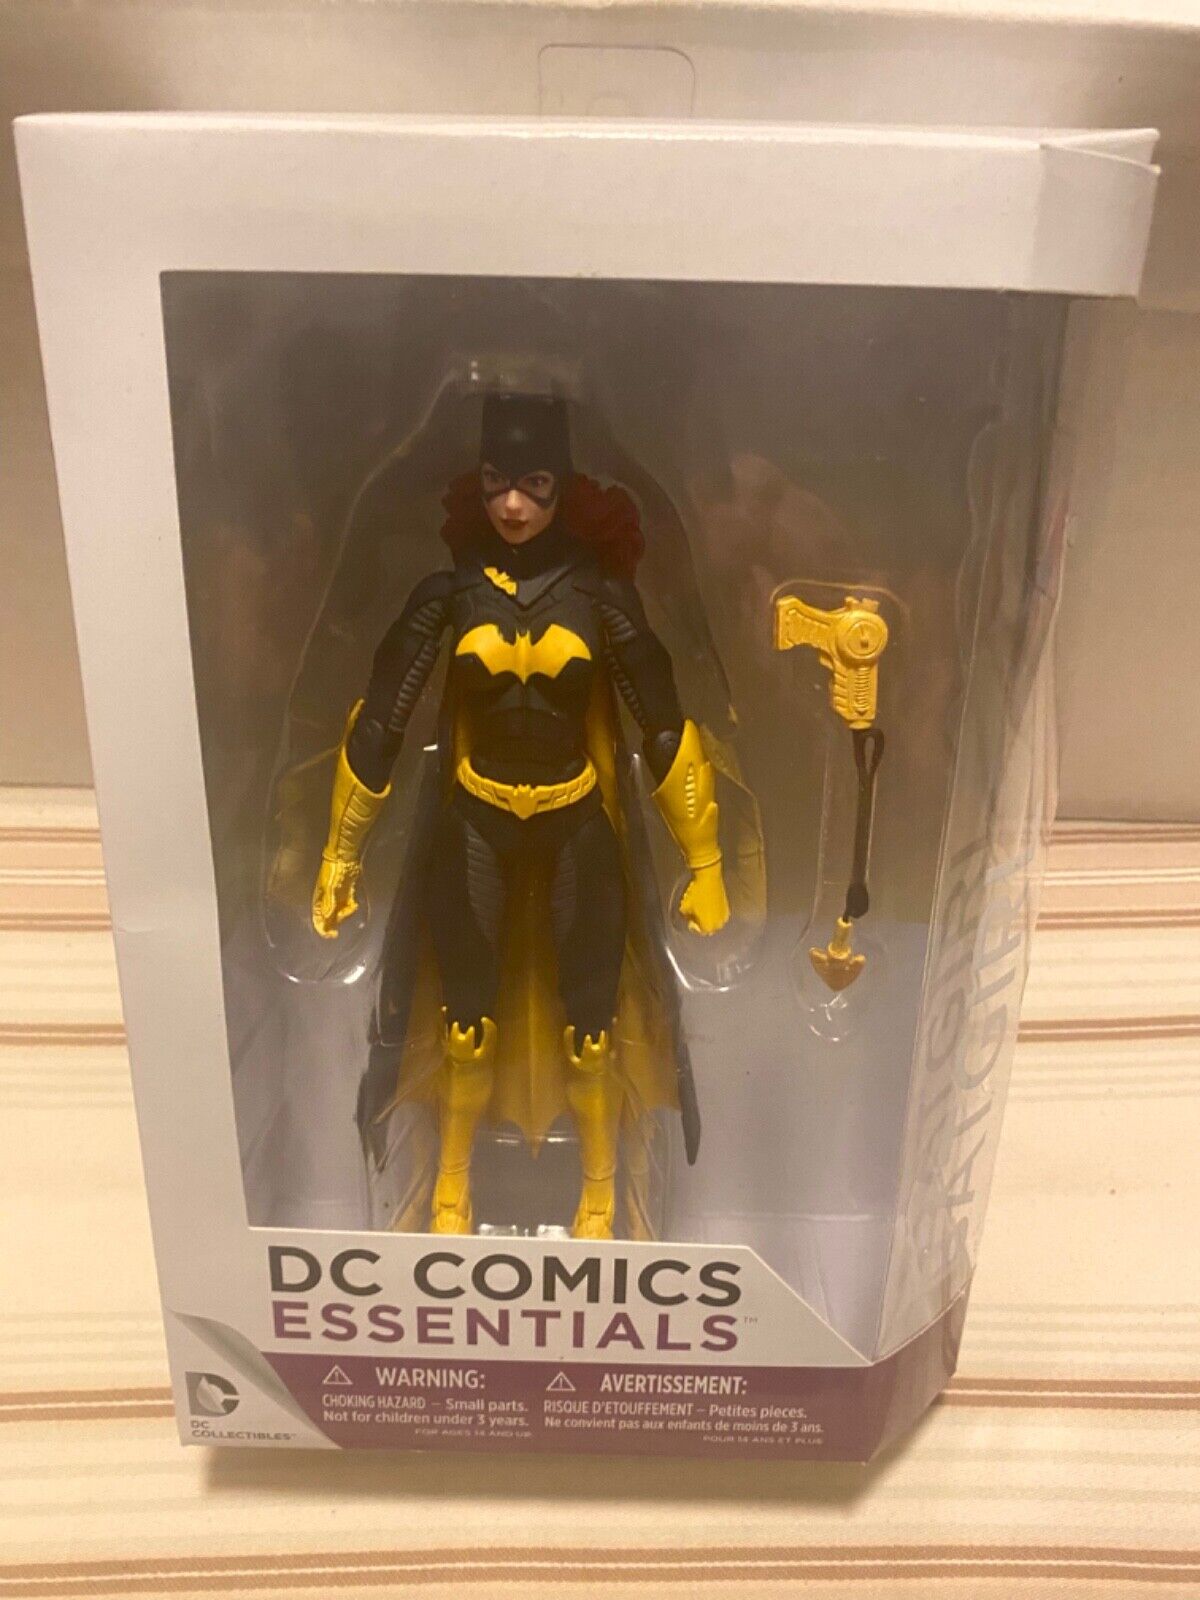 Batgirl DC Comics Essentials New in Box DC Collectibles Action Figure